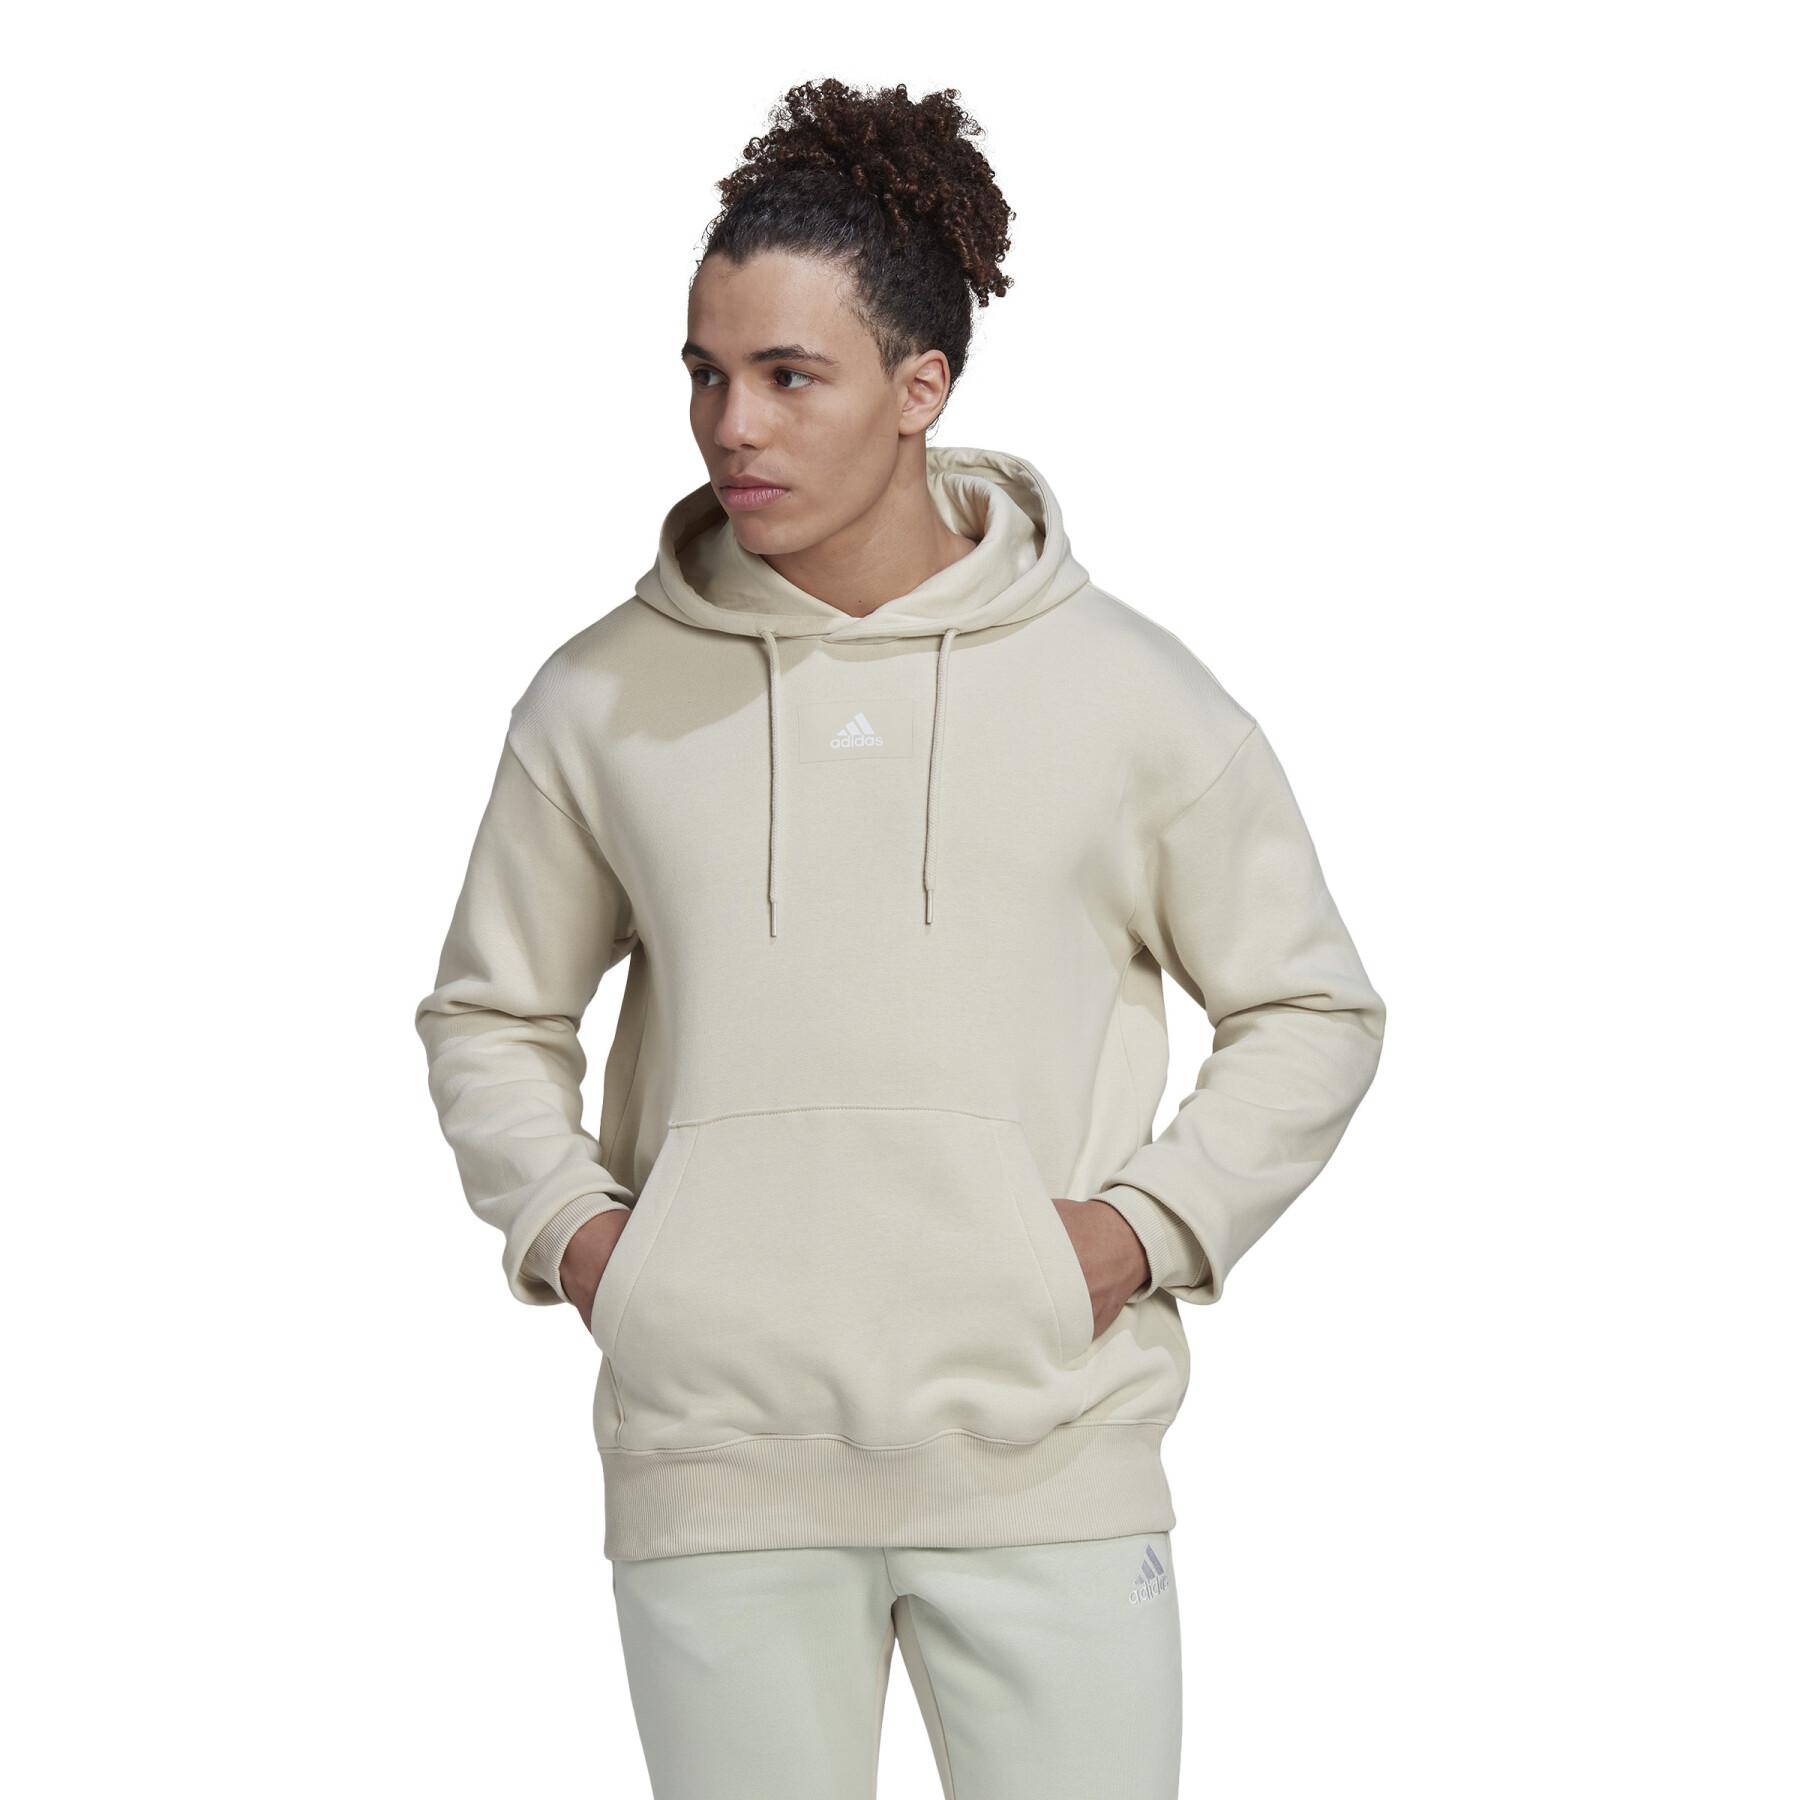 Hooded sweatshirt in fleece adidas Essentials FeelVivid